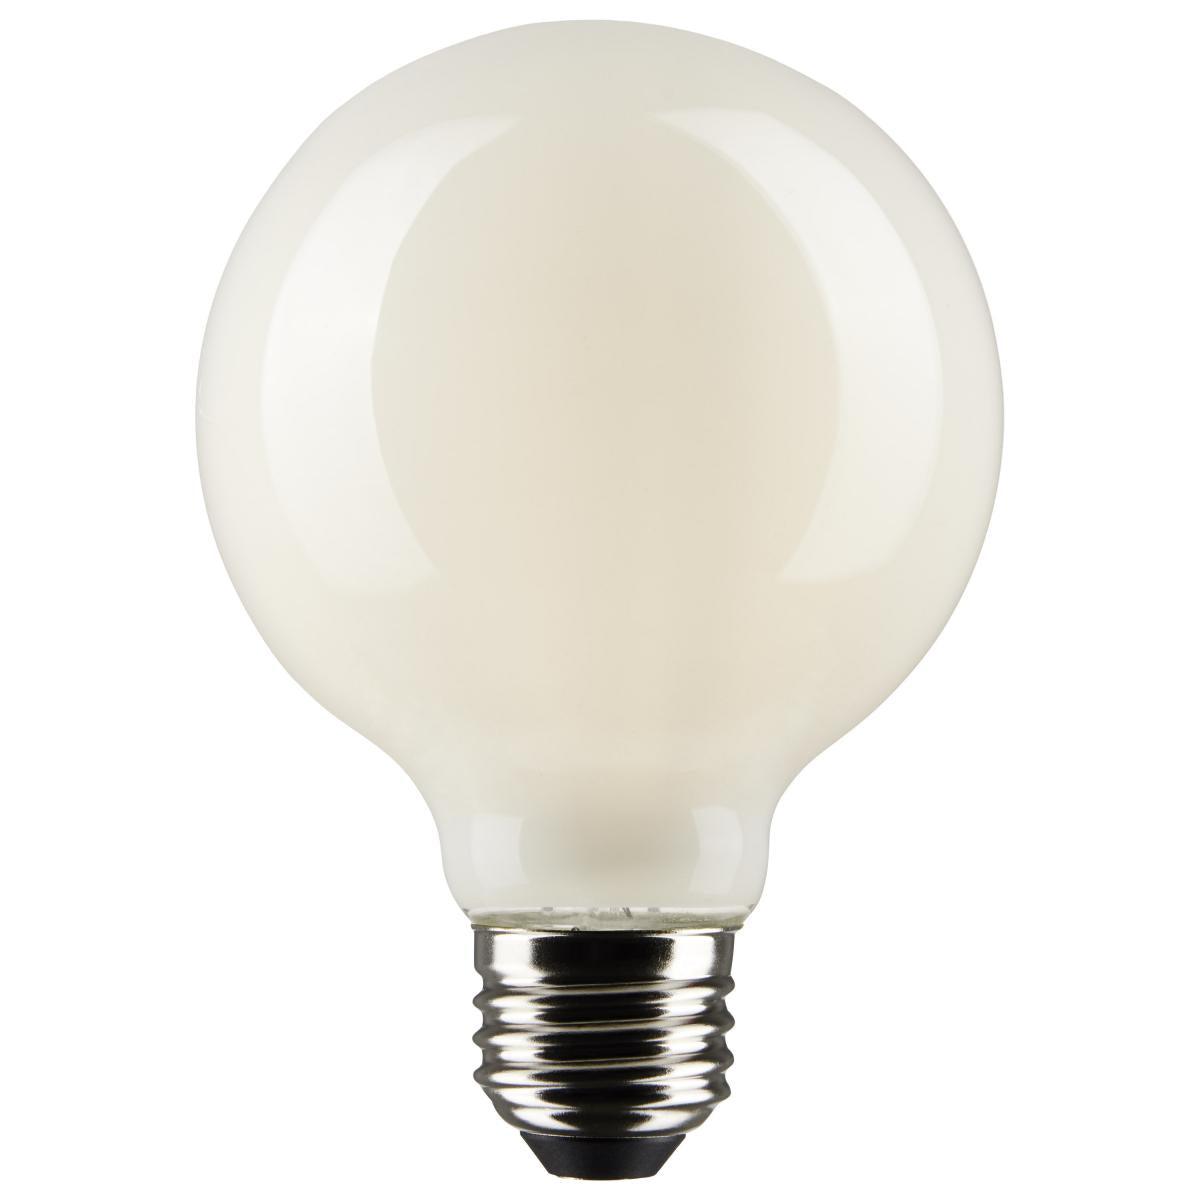 G25 LED Globe Bulb, 5 Watt, 350 Lumens, 2700K, E26 Medium Base, Frosted Finish, Pack Of 2 - Bees Lighting